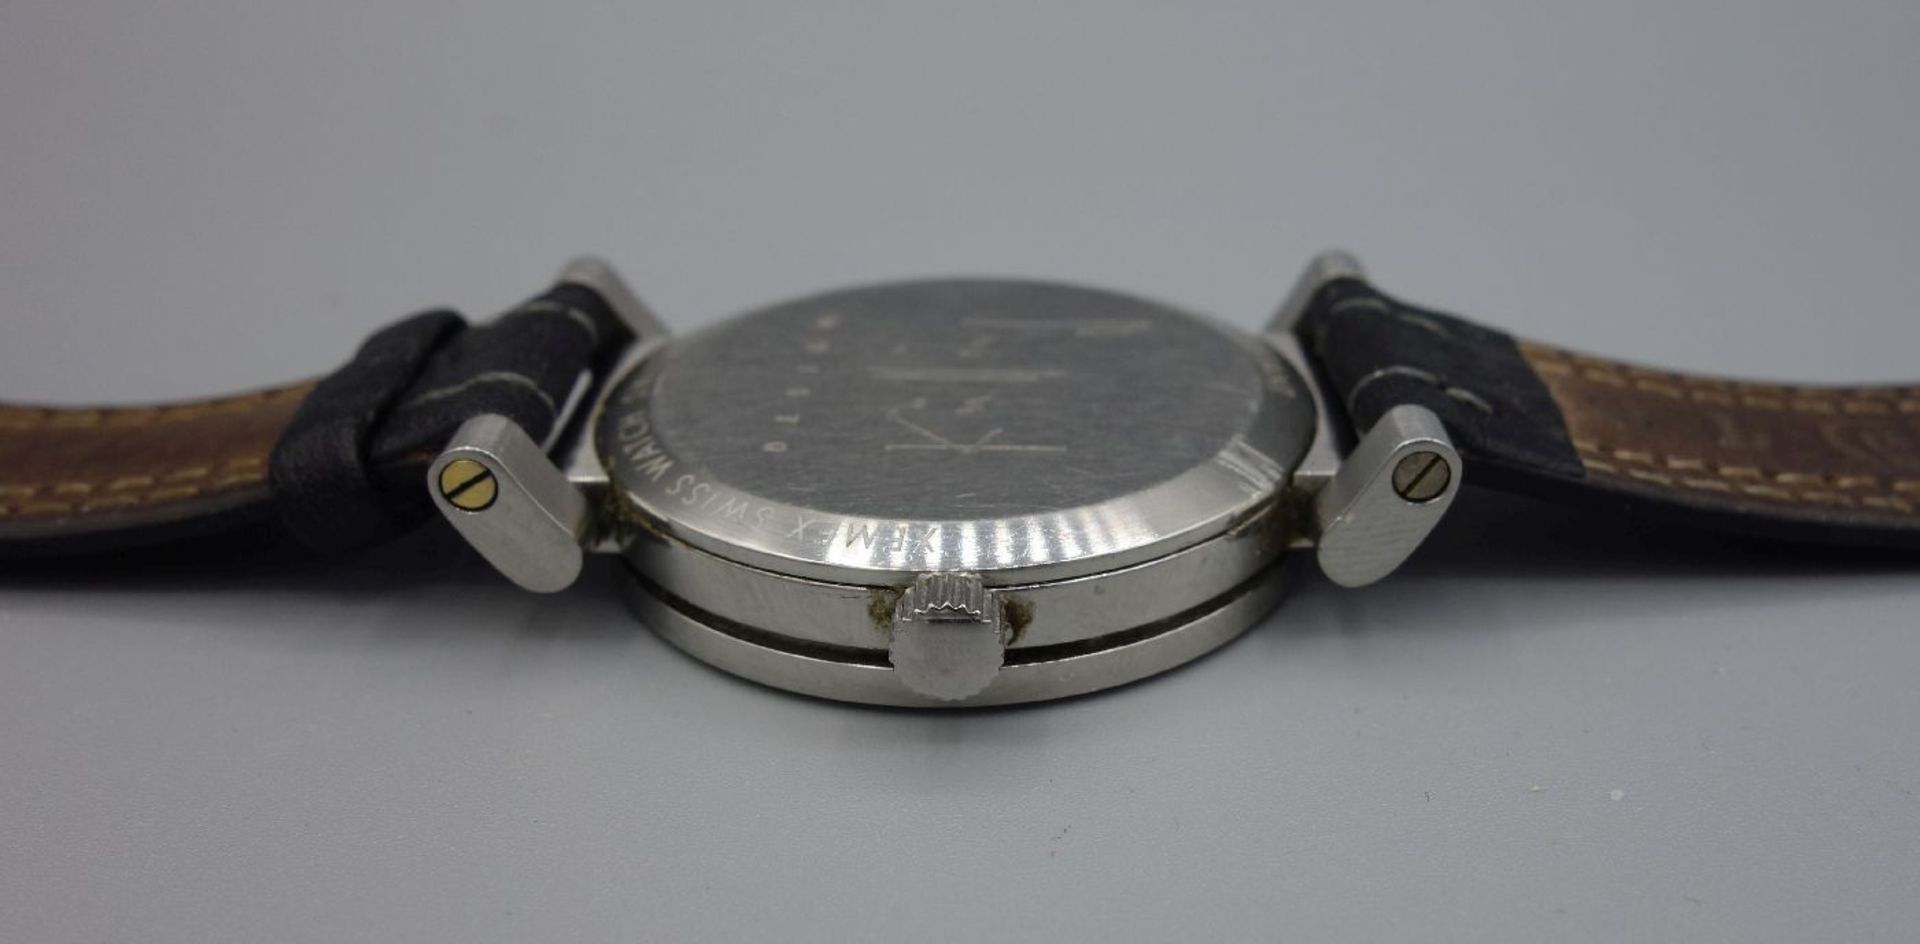 ARMBANDUHR - XEMEX OFFROAD / wristwatch, Quarz, Schweiz. Rundes Edelstahlgehäuse an schwarzem - Bild 7 aus 7